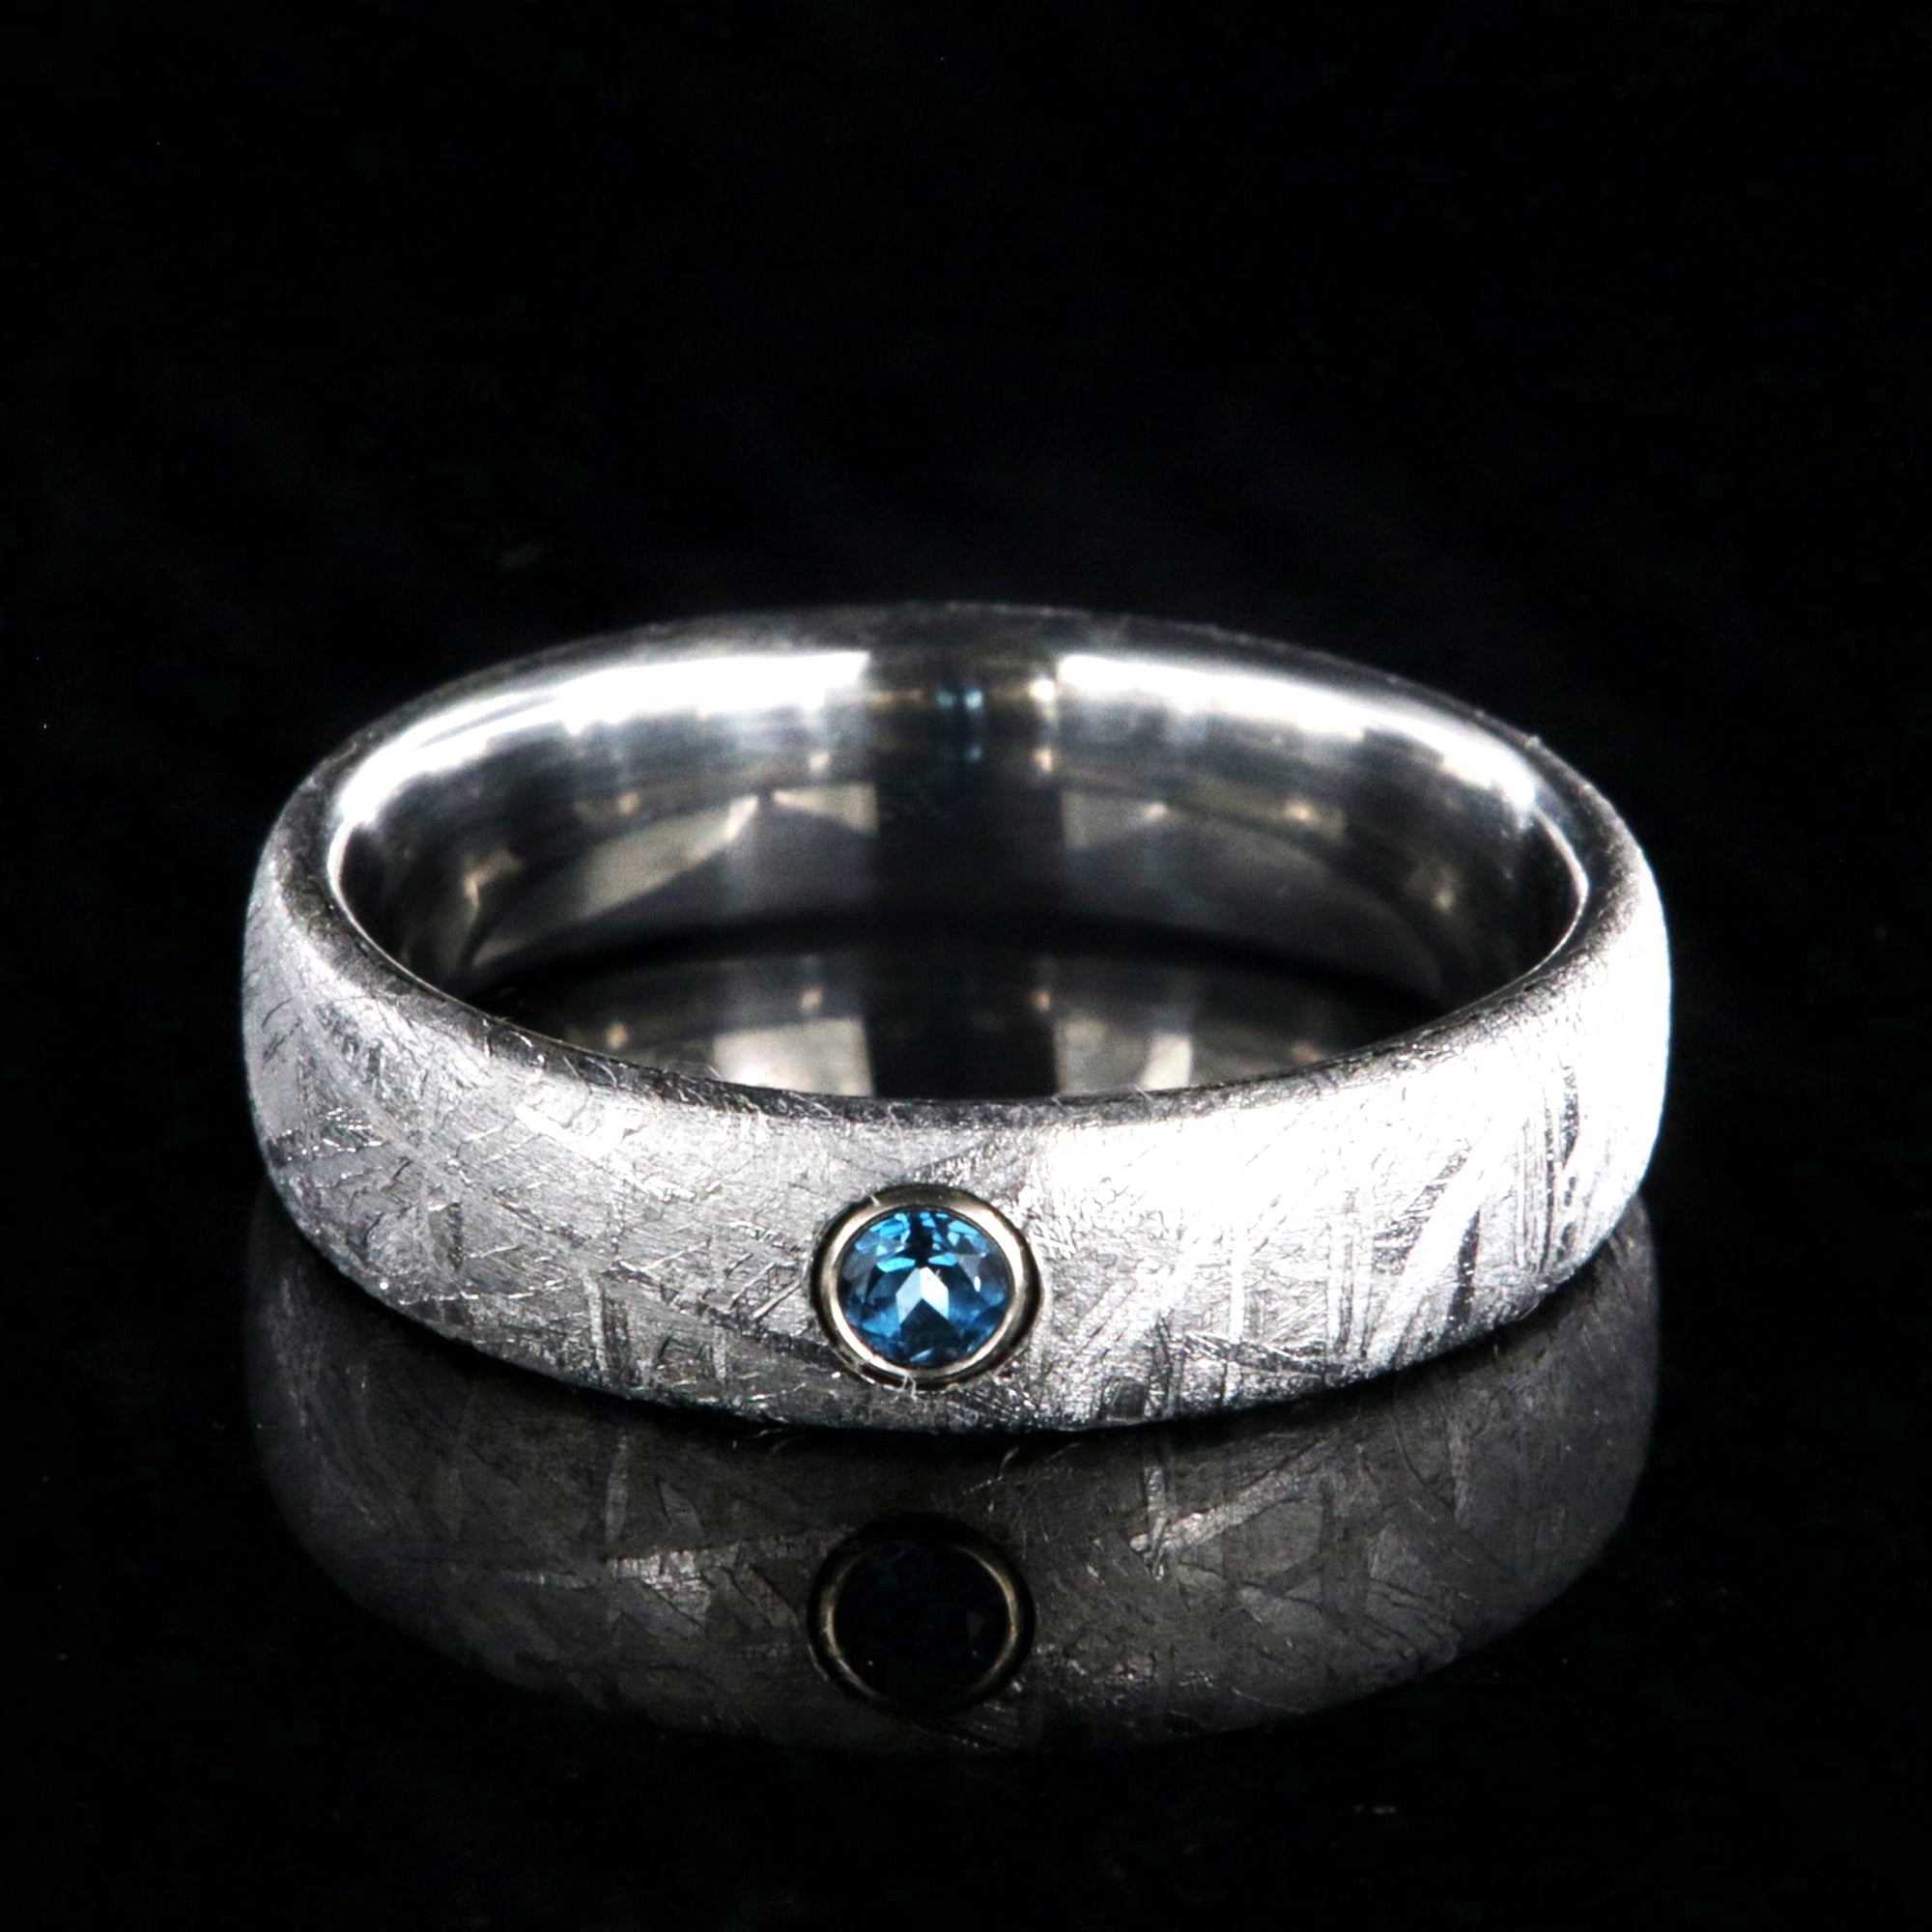 5mm wide women's meteorite ring with a blue topaz set in 14k gold bezel